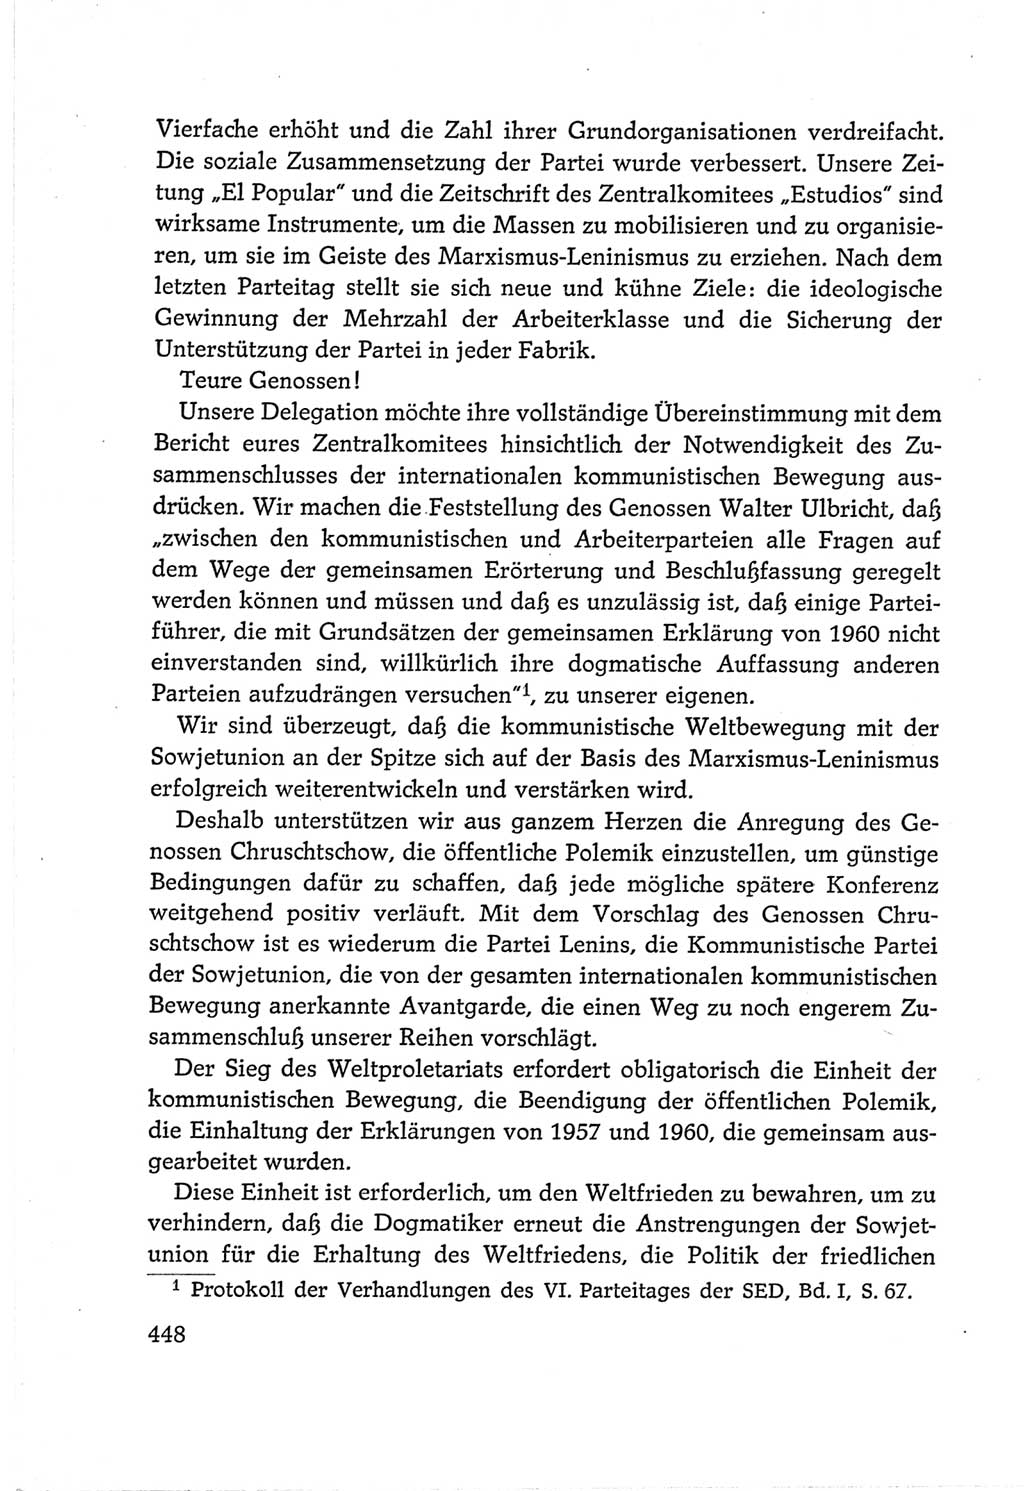 Protokoll der Verhandlungen des Ⅵ. Parteitages der Sozialistischen Einheitspartei Deutschlands (SED) [Deutsche Demokratische Republik (DDR)] 1963, Band Ⅱ, Seite 448 (Prot. Verh. Ⅵ. PT SED DDR 1963, Bd. Ⅱ, S. 448)